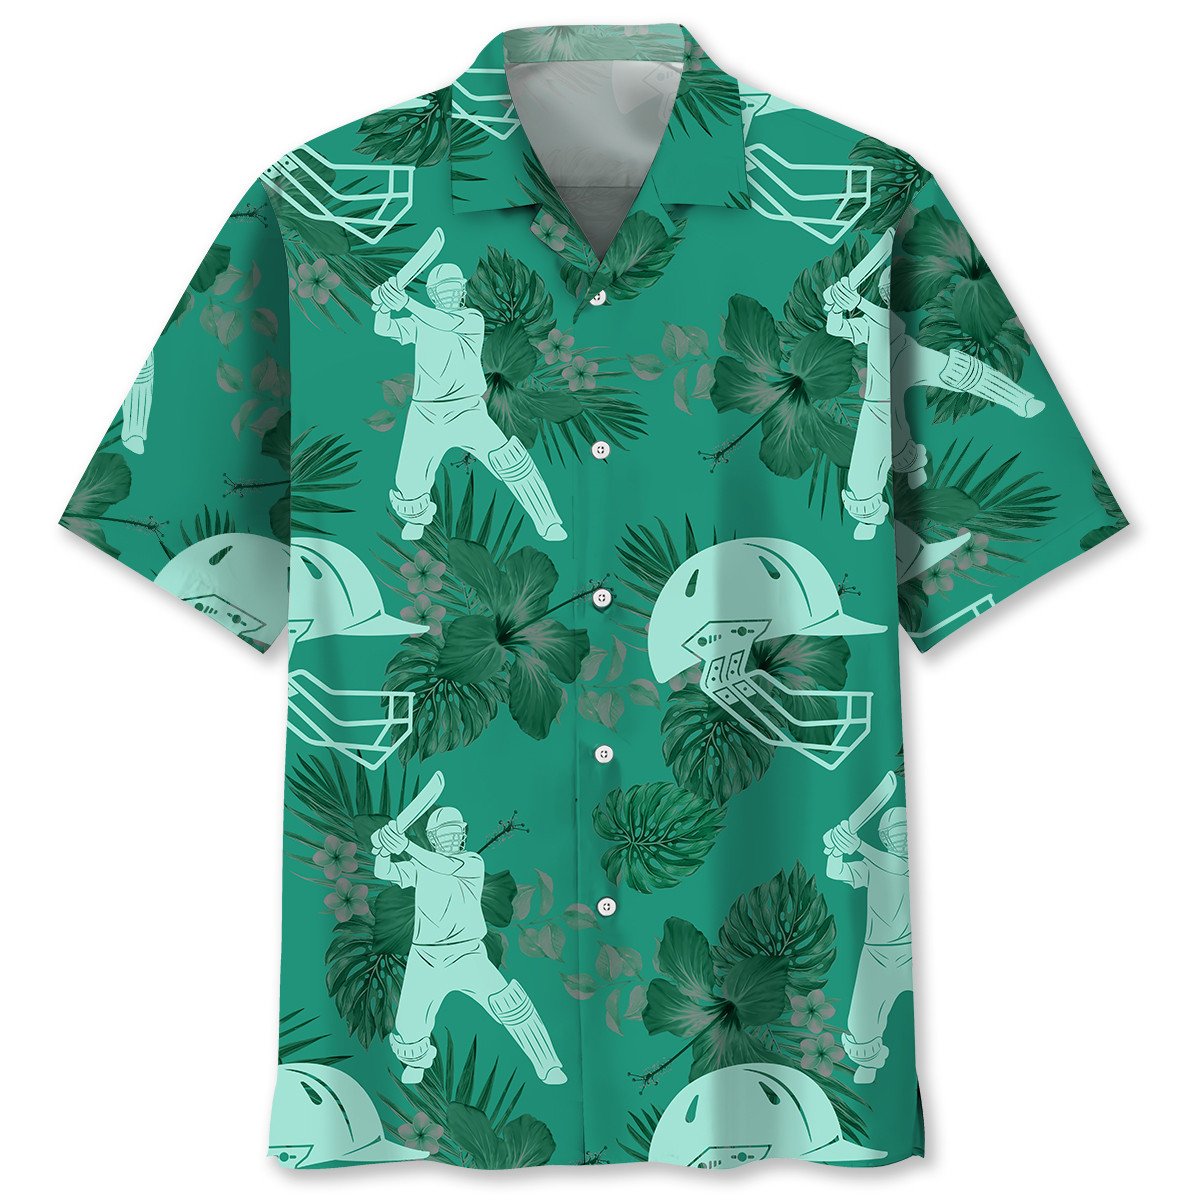 NEW Cricket Kelly Green Hawaiian Shirt